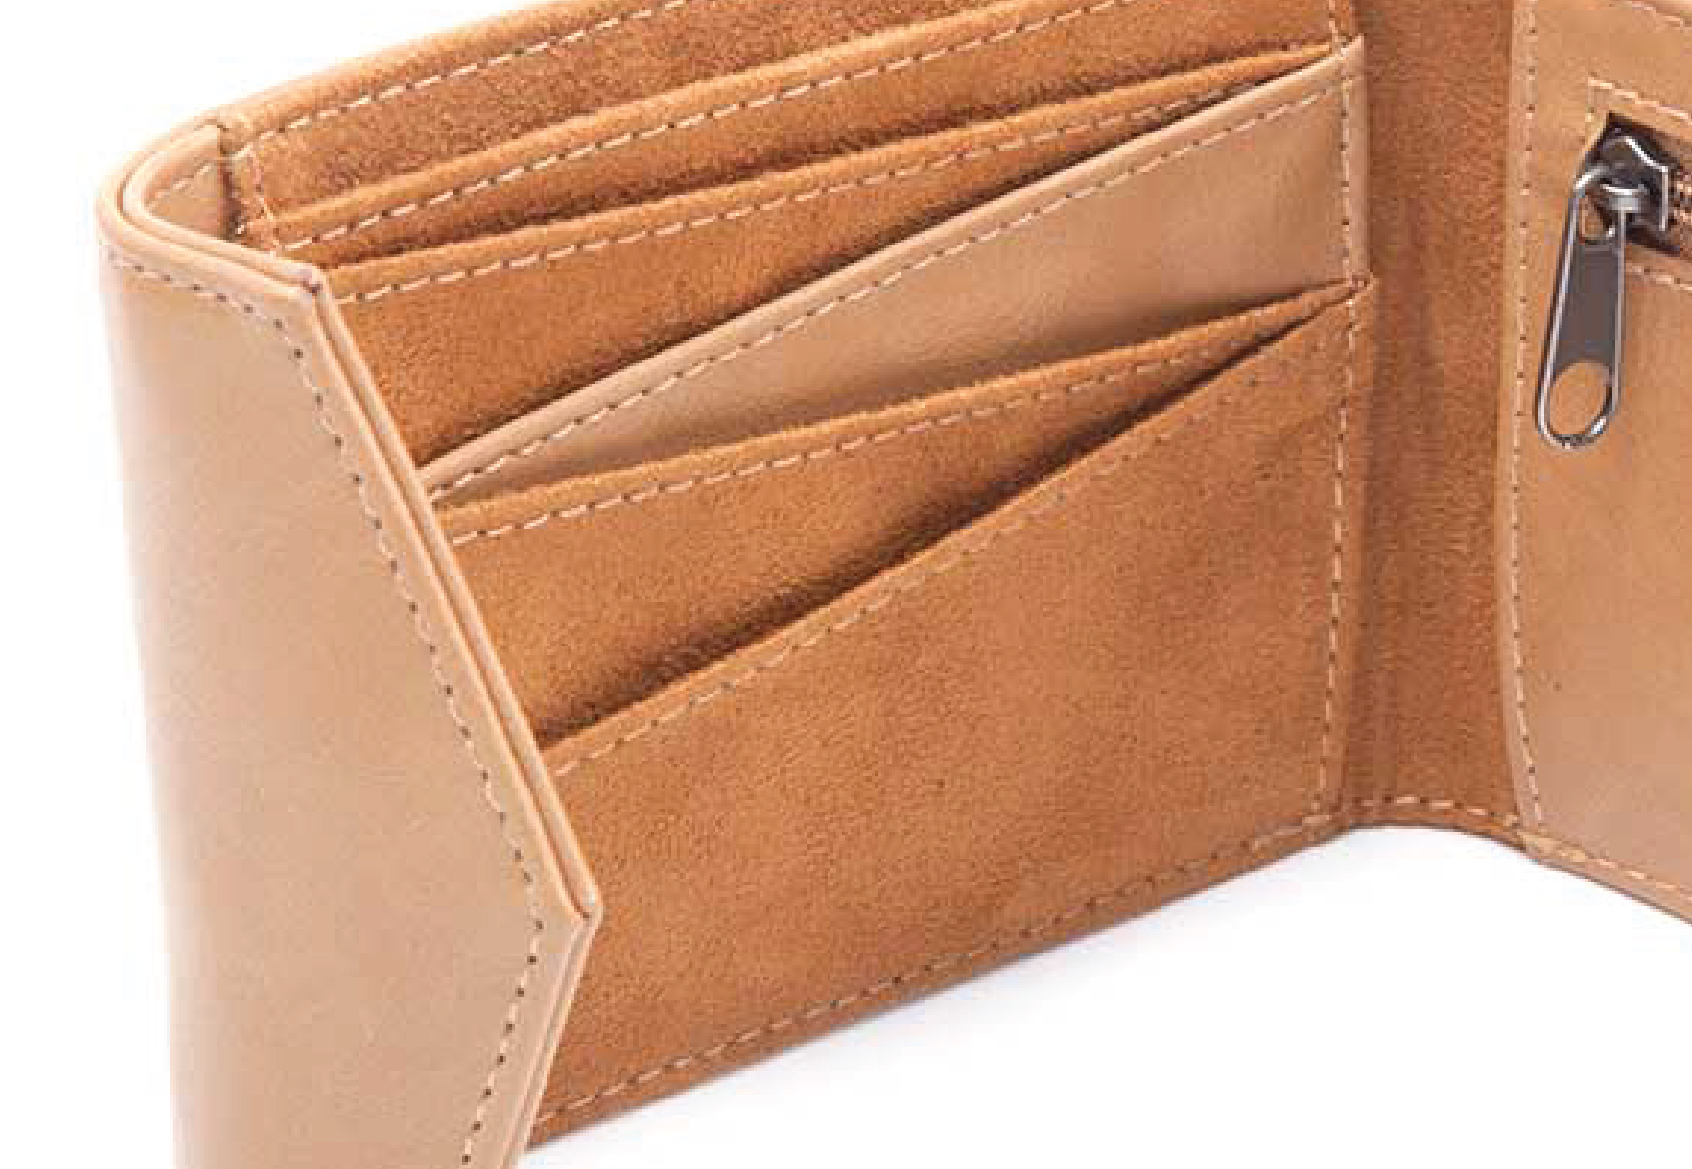 Inside the bi-fold wallet